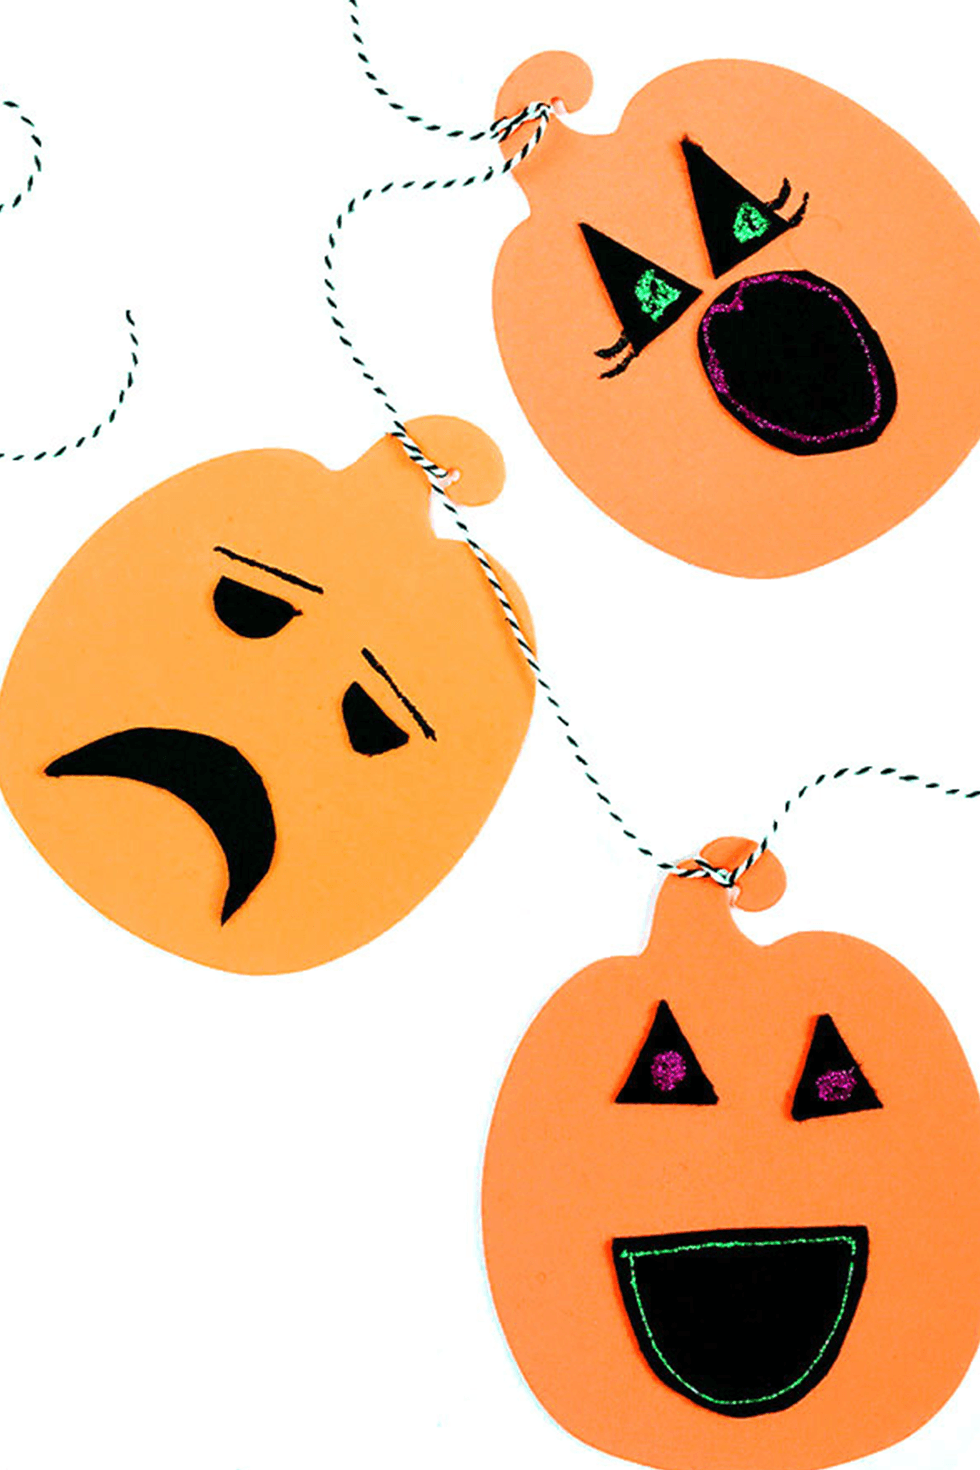 ZERHOK 8 Pezzi Cappello di Halloween per Bambini,Cappelli a Cono di Halloween Fai-da-Te Cappello di Carta dei Cartoni Animati Pipistrello Zucca Fantasma Spider per Bambini Halloween